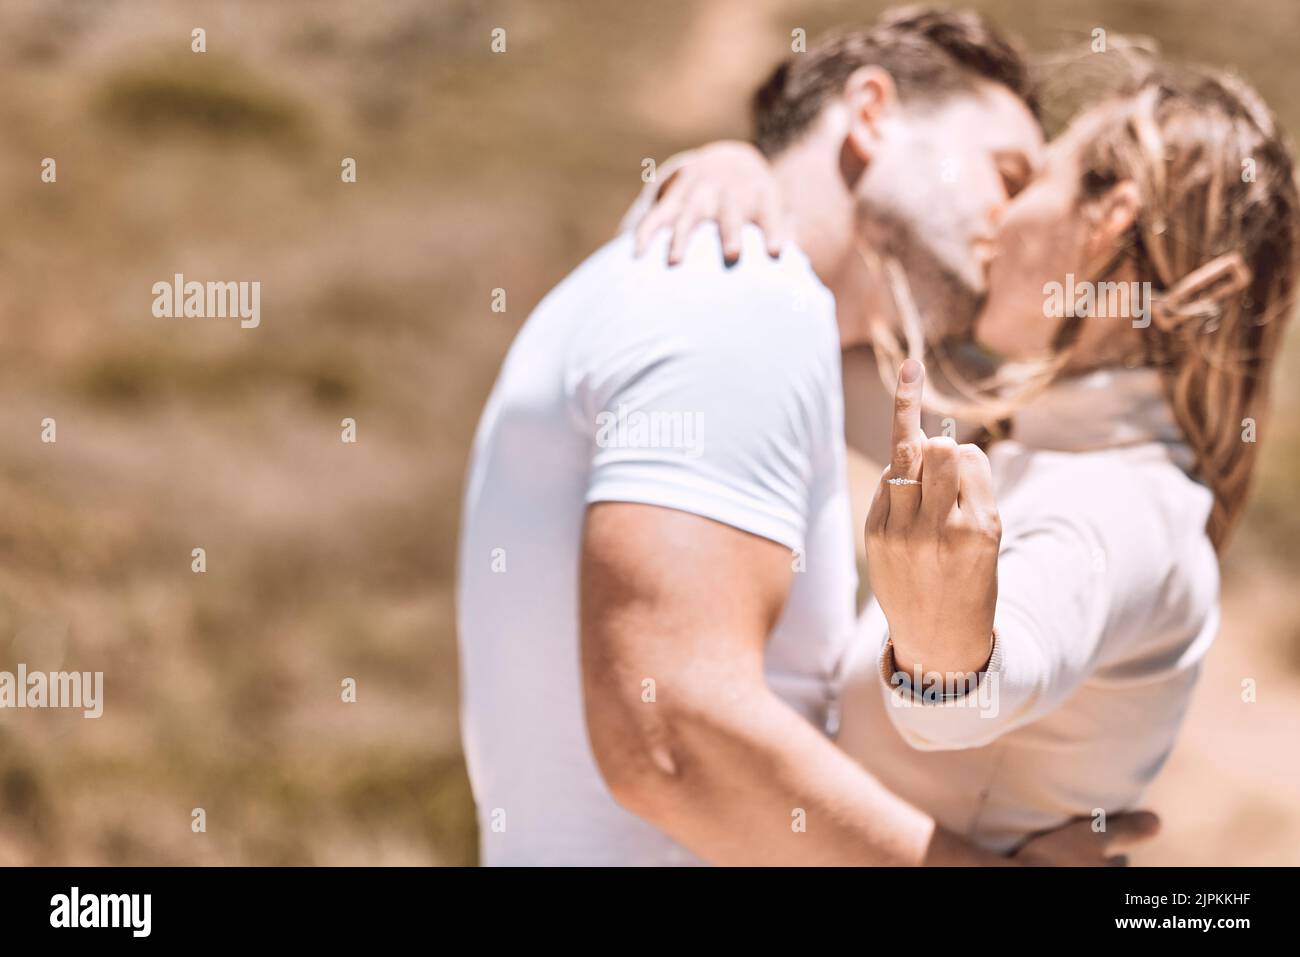 Eine junge Frau zeigt ihren Verlobungsring, während das Paar sich küsst und gemeinsam einen süßen Moment genießt. Verliebt, romantisch und küssen Paar bereit für Stockfoto